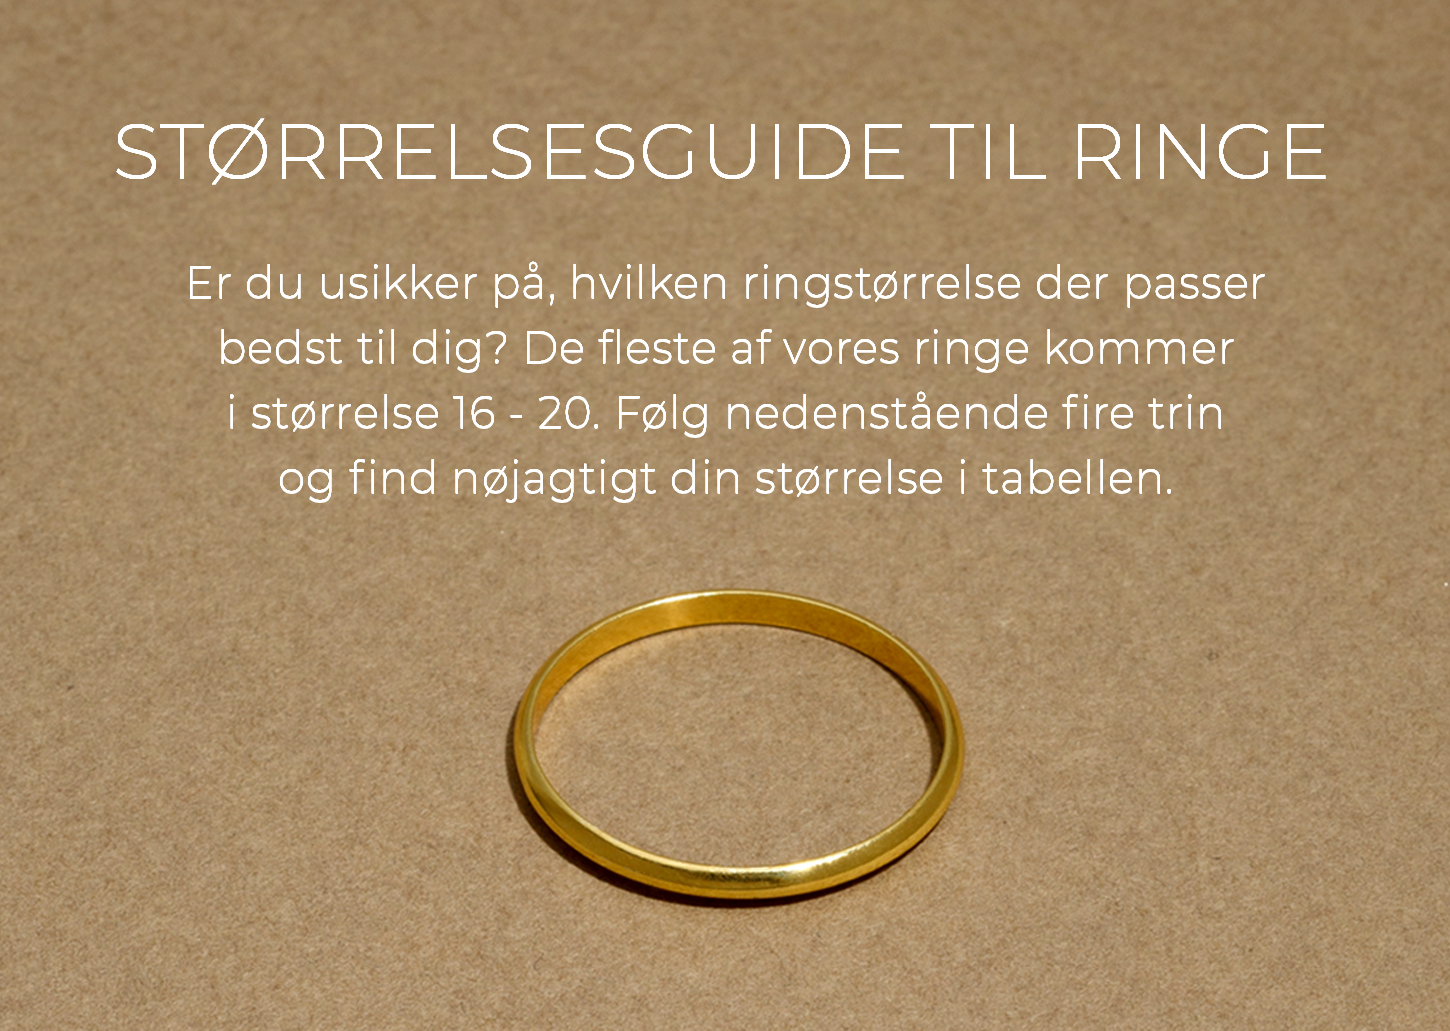 Ringstørrelse – sådan du din ringstørrelse – Glitter.dk